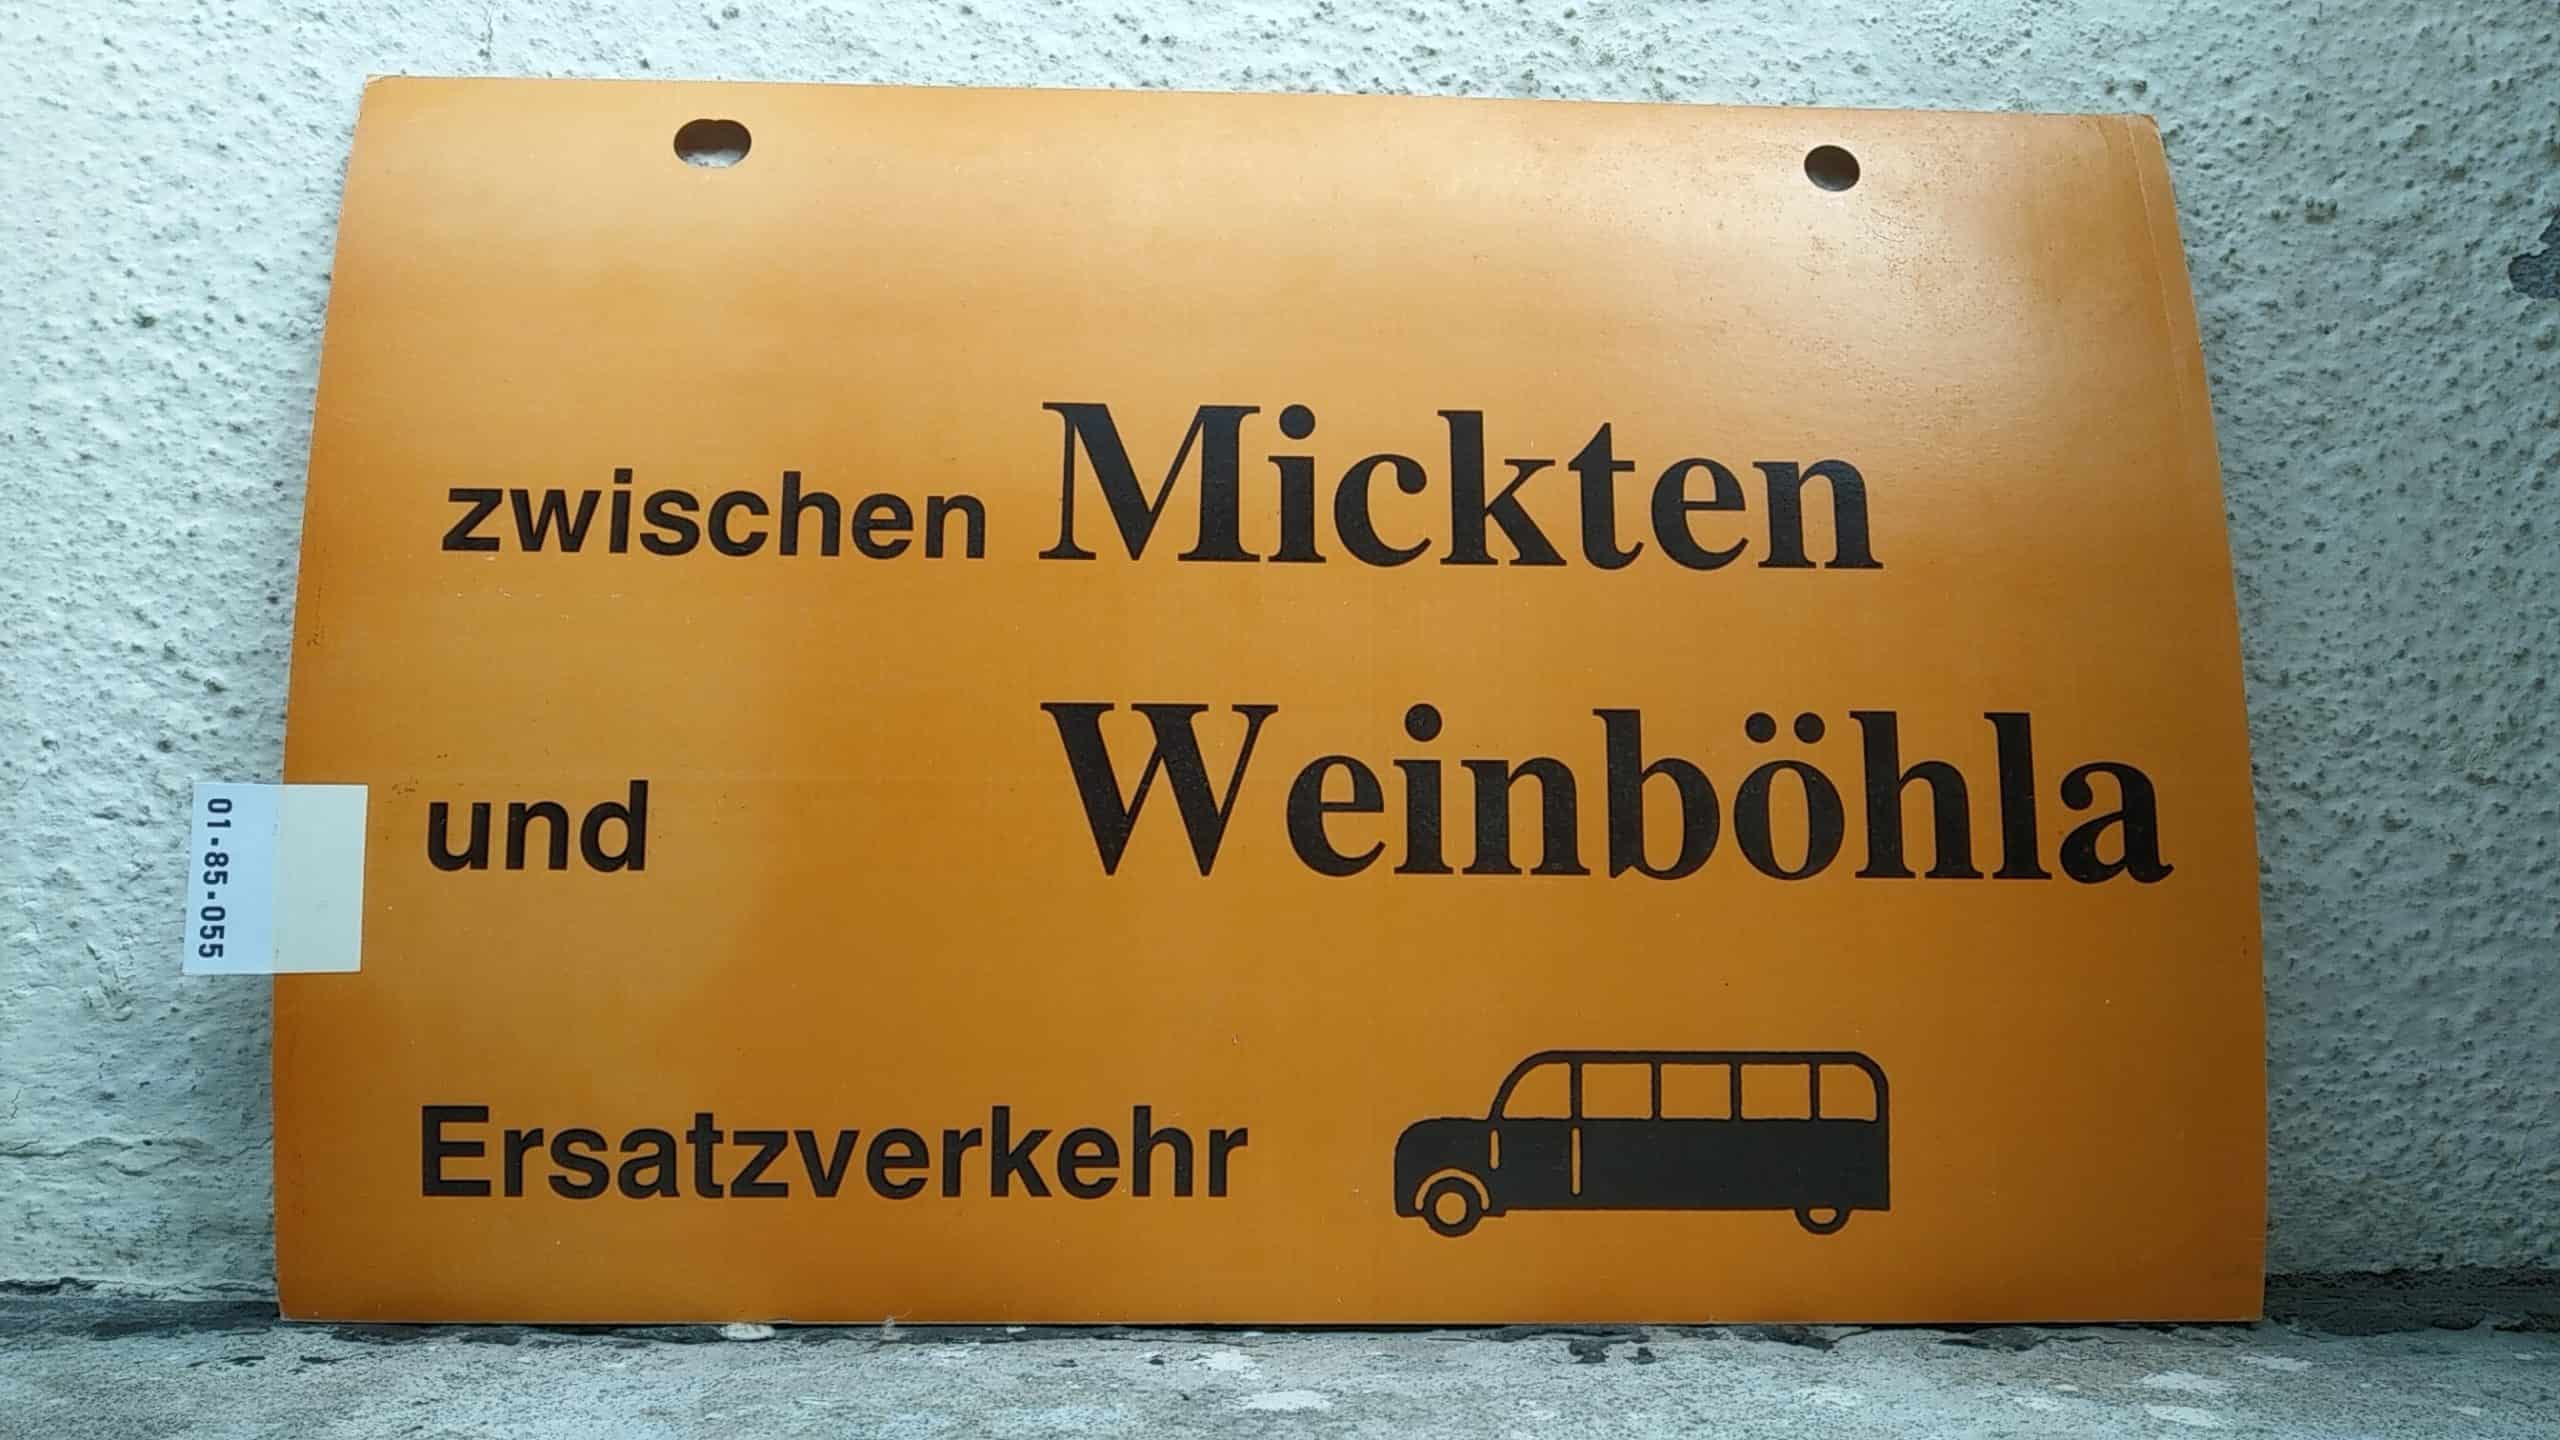 Ein seltenes Straßenbahn-Umleitungsschild aus Dresden: zwischen Mickten und Weinböhla Ersatzverkehr [Bus alt]